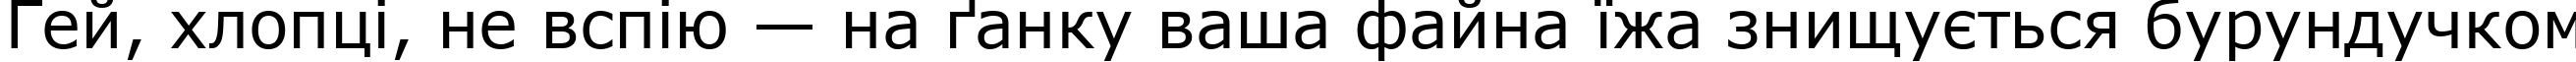 Пример написания шрифтом font228 текста на украинском